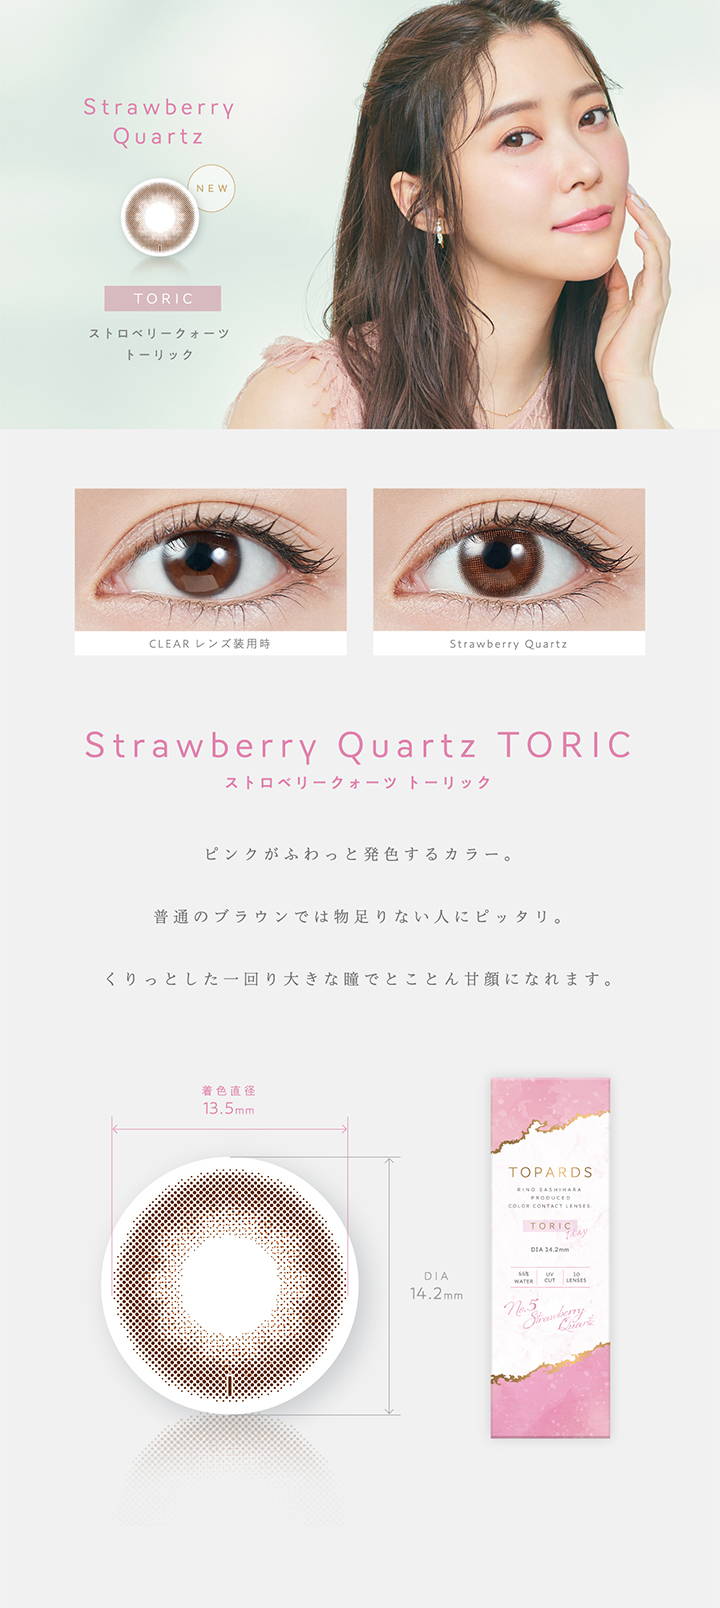 【乱視用:乱視度数:-0.75D】 Strawberry Quartz TORIC(ストロベリークォーツトーリック),新色,ピンクがふわっと発色するカラー。普通のブラウンでは物足りない人にピッタリ。くりっとした一回り大きな瞳でとことん甘顔になれます。,着色直径13.5mm,DIA14.2mm|TOPARDS TORIC(トパーズトーリック)コンタクトレンズ